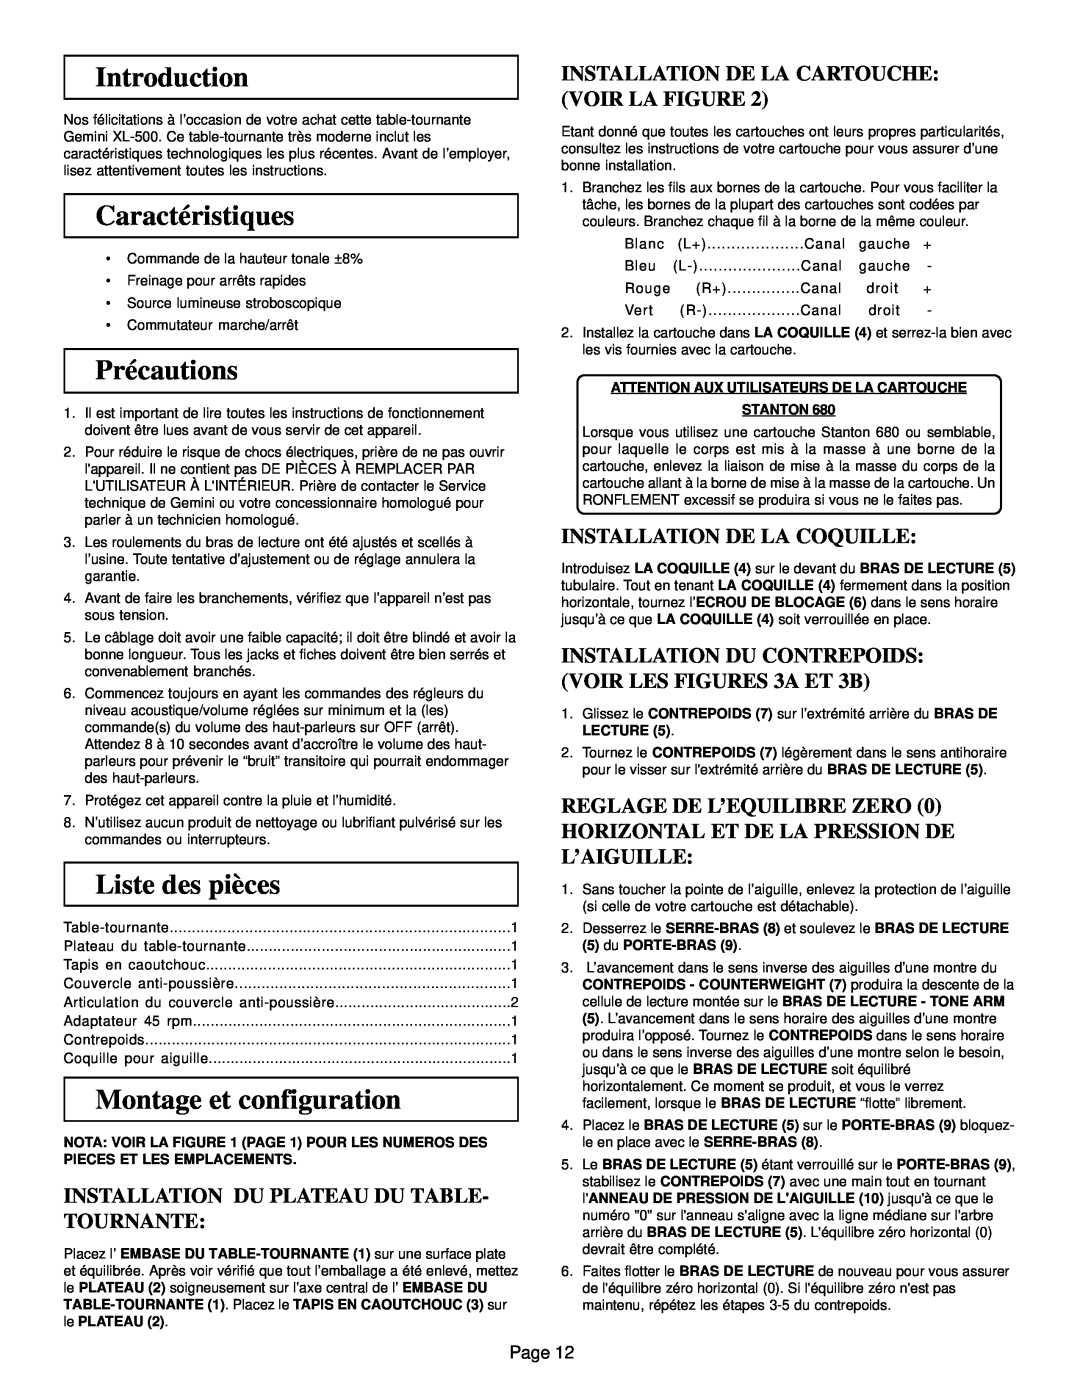 Gemini XL-500 manual Caractéristiques, Précautions, Liste des pièces, Montage et configuration, Installation De La Coquille 